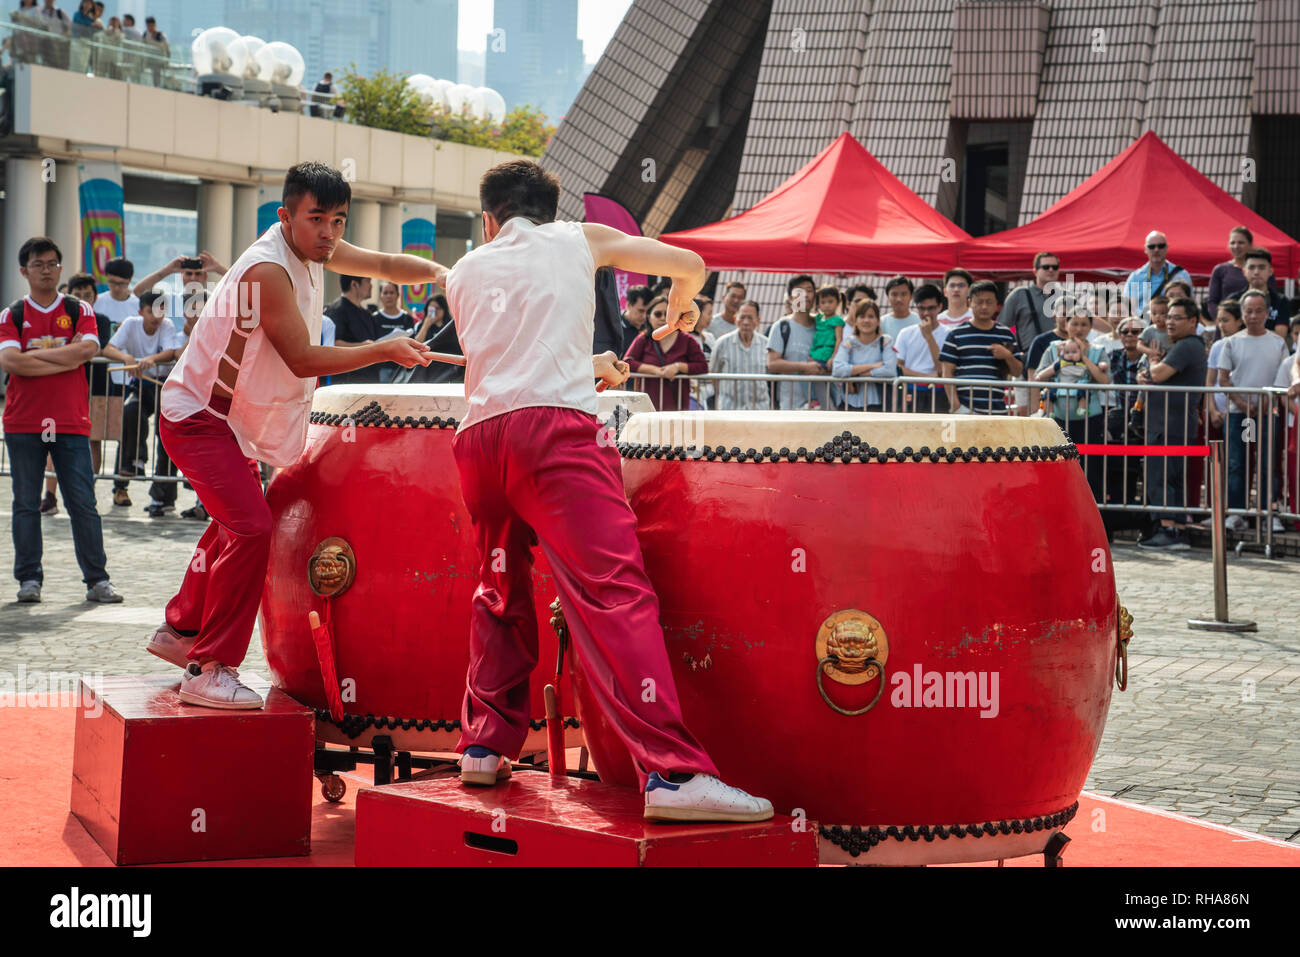 La synergie de Hong Kong 24 La concurrence à l'extérieur du tambour à Kowloon, Hong Kong, Chine, Asie. Banque D'Images